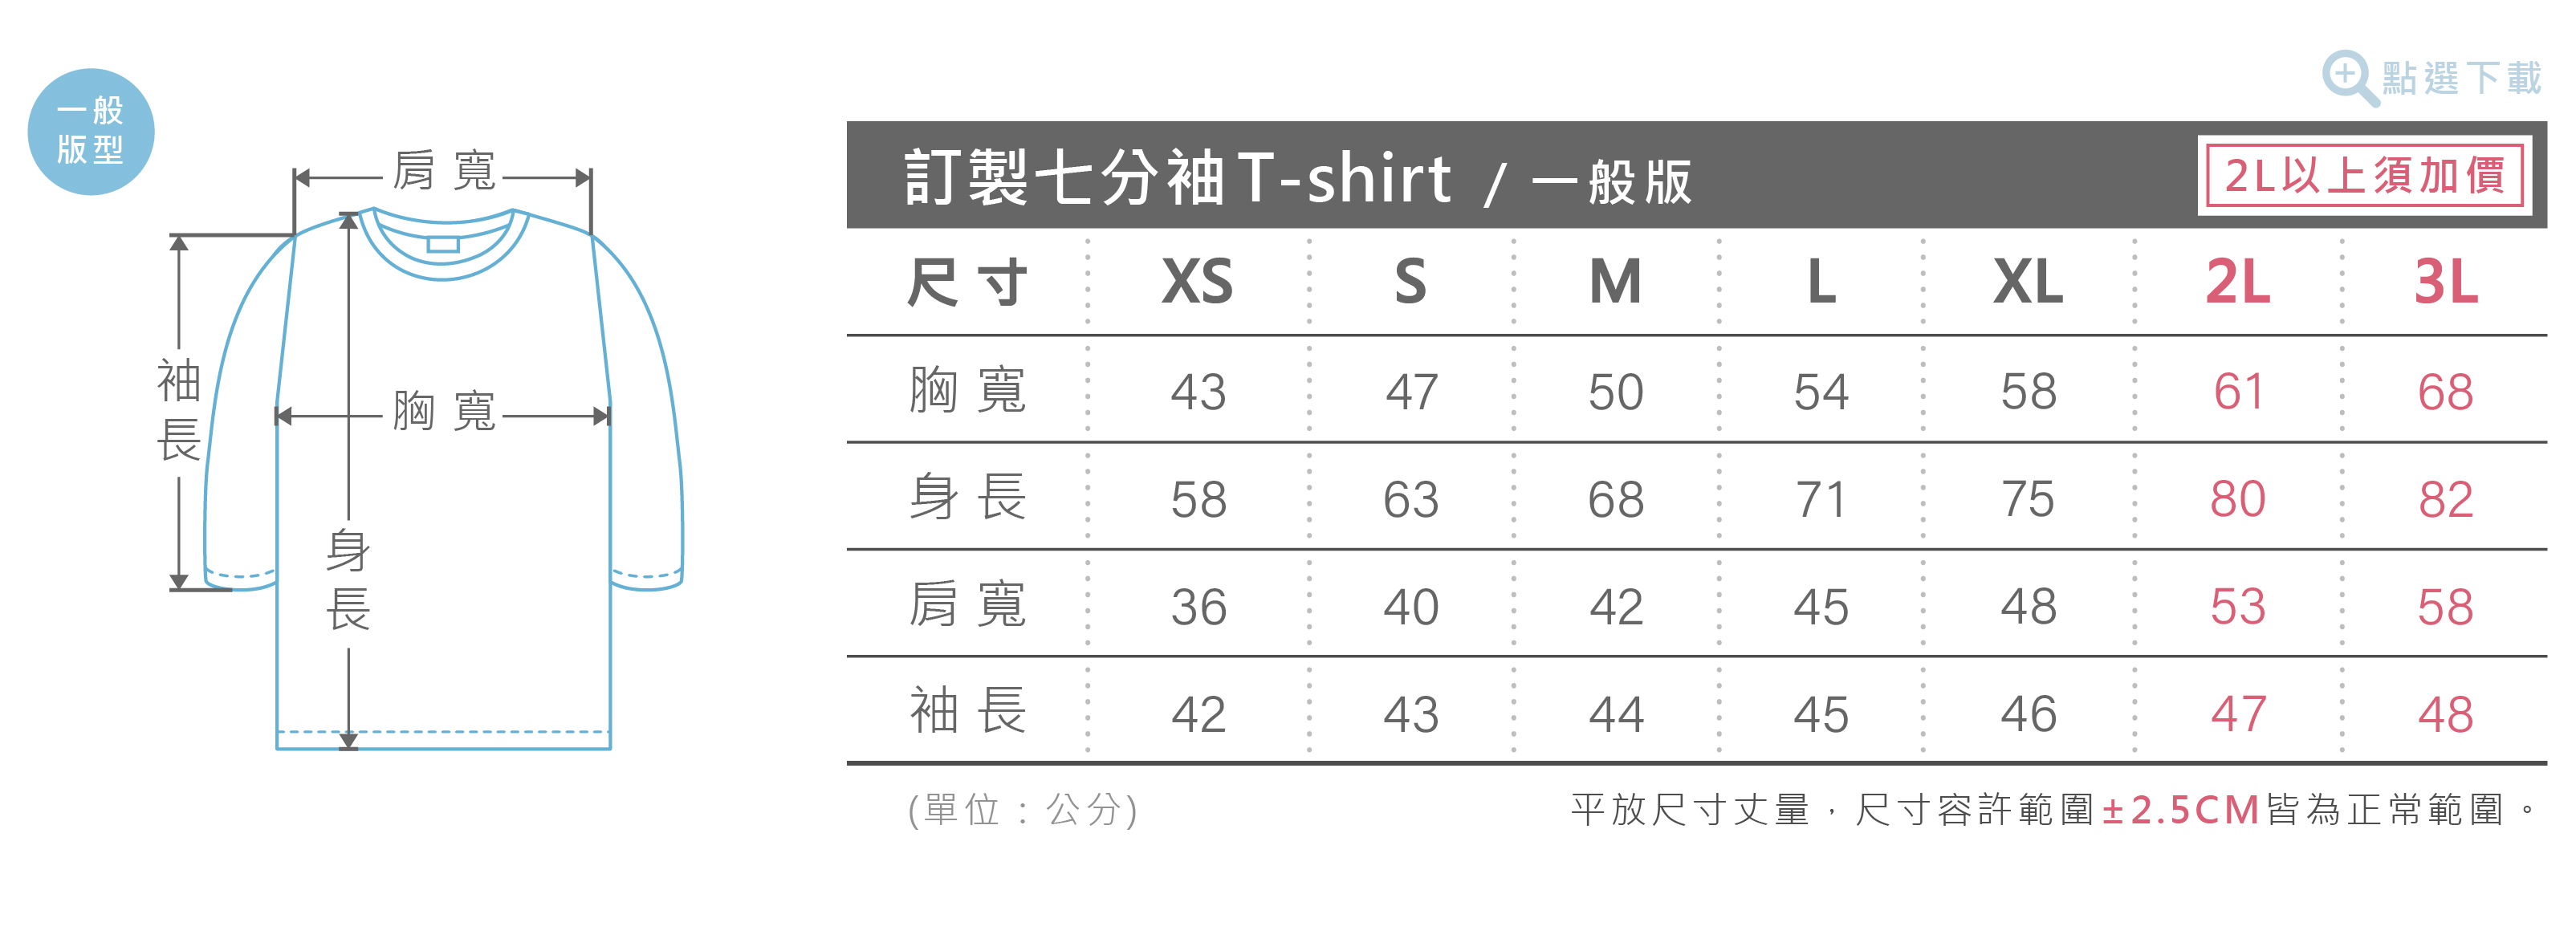 七分袖T-shirt尺寸表